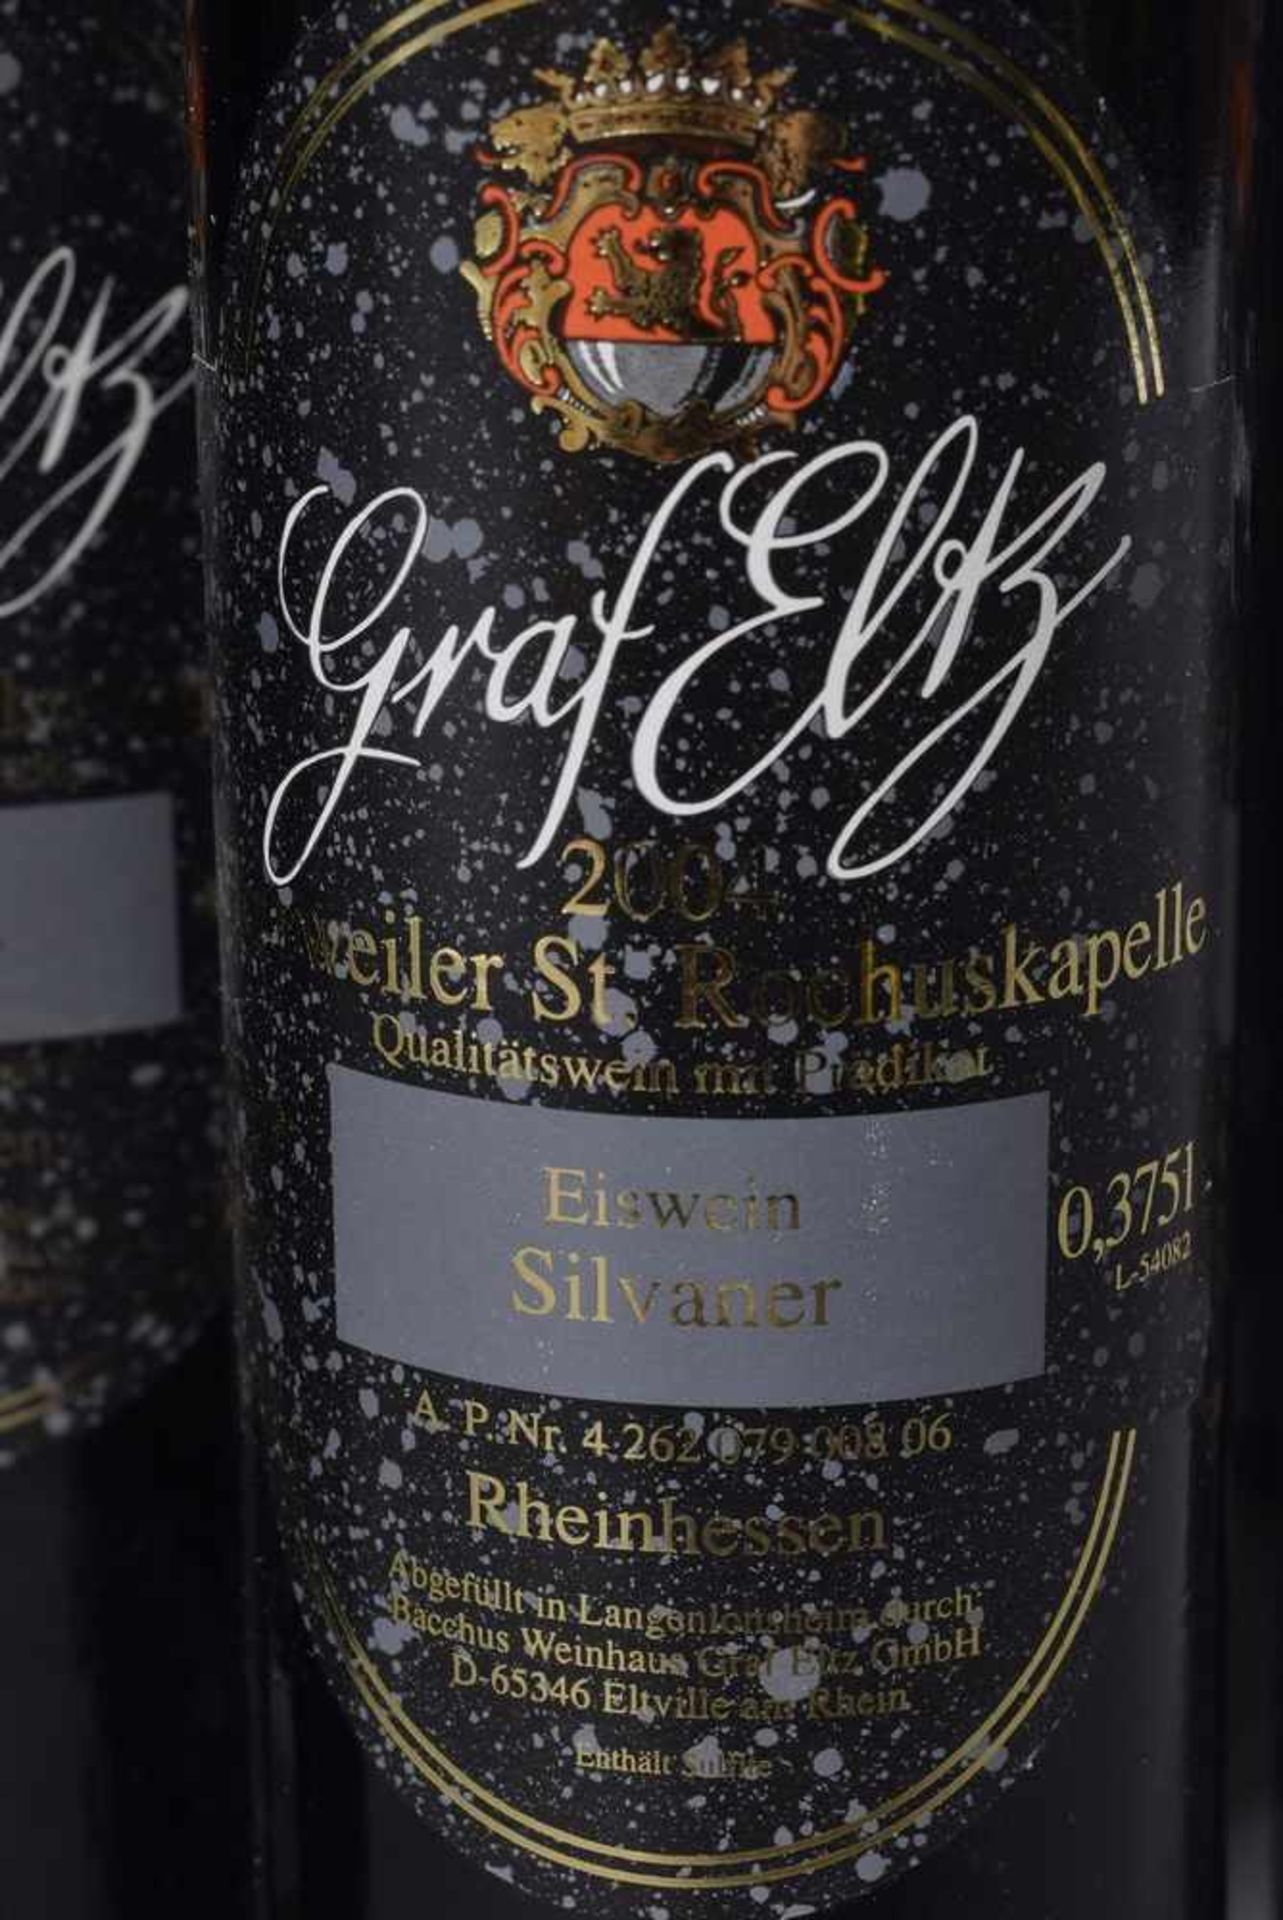 18 Flaschen Graf Eltz, Herrweiler St. Rochuskapelle, Eiswein Silvaner, Pfalz, 2004, 0,375 l., - Bild 2 aus 2